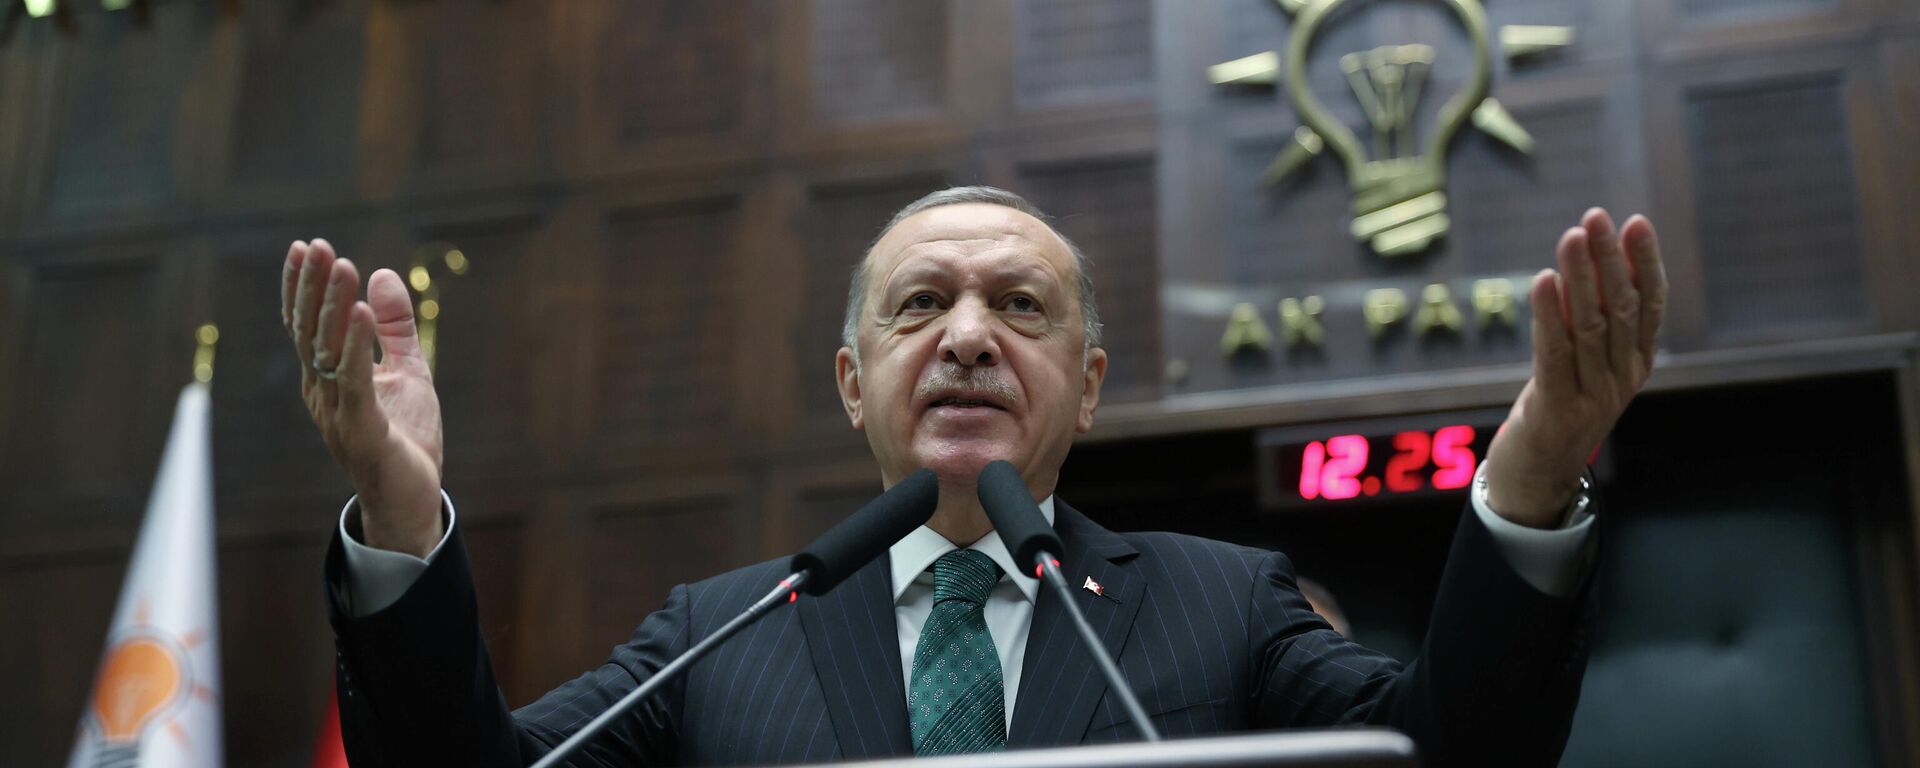 El presidente de Turquía, Recep Tayyip Erdogan - Sputnik Mundo, 1920, 21.10.2021